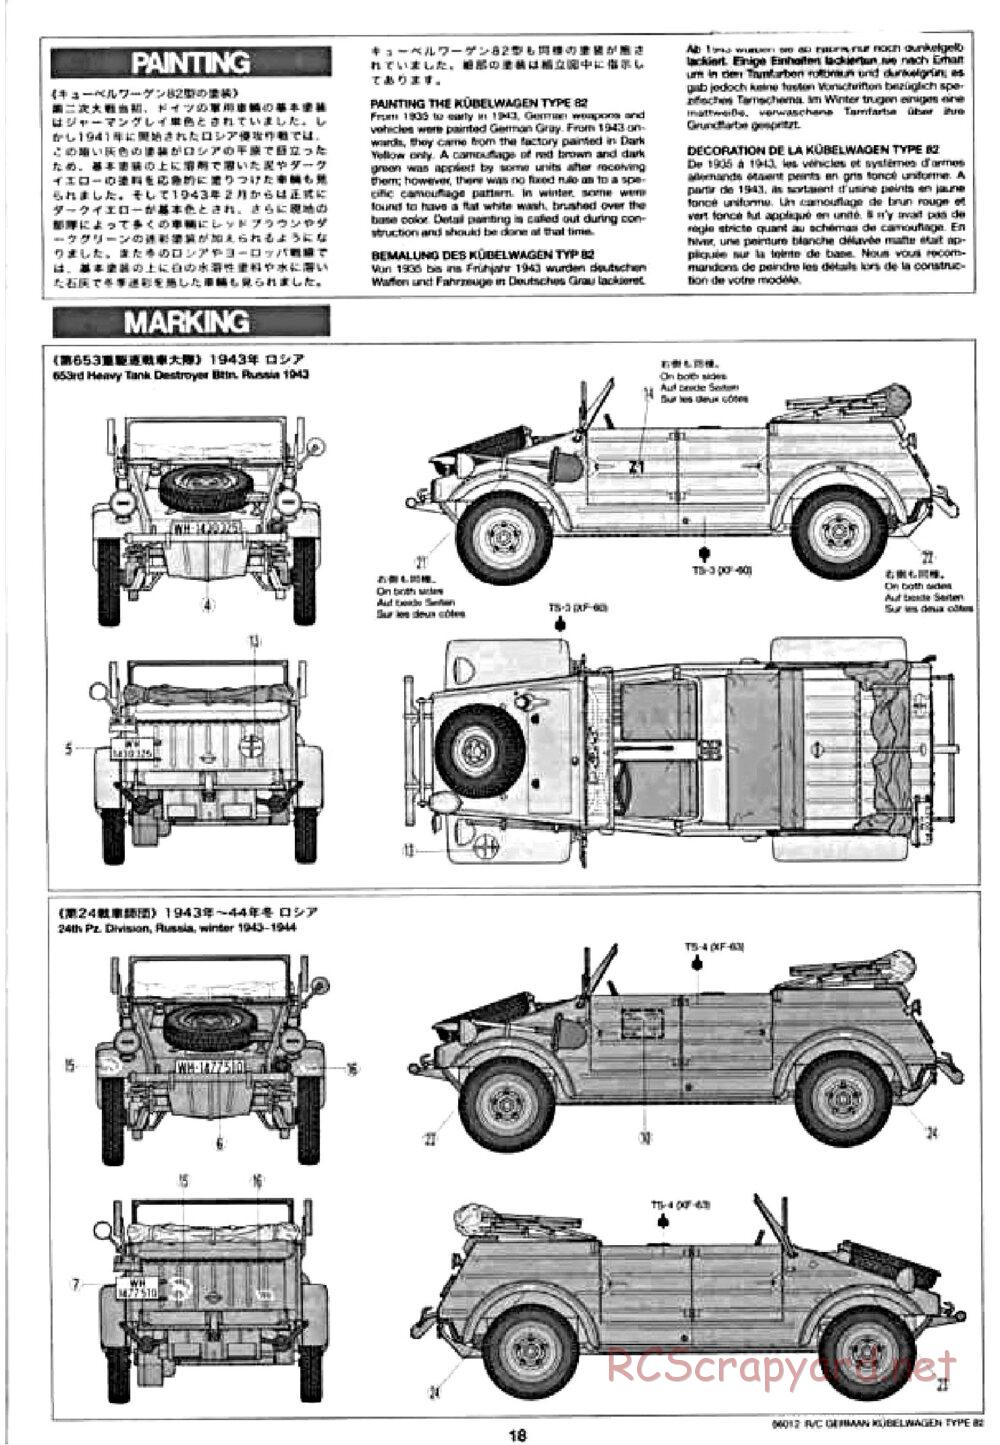 Tamiya - Kubelwagen Type 82 Chassis - Manual - Page 18